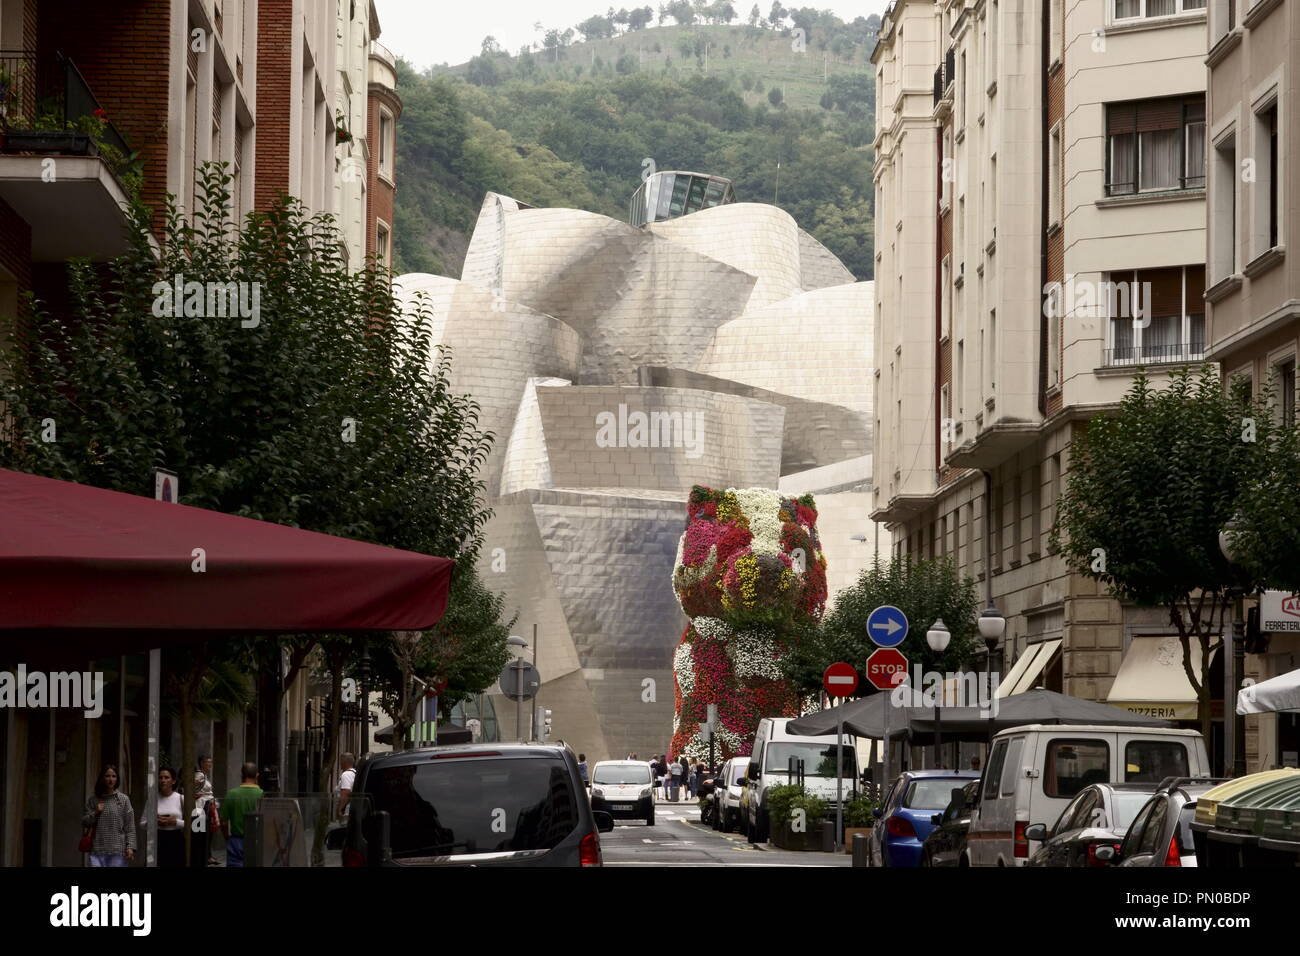 Bilbao, España, 13 de septiembre de 2018, una calle lateral vista de enfoque hacia el Museo Guggenheim, una maravilla artística muestra off es ángulos y artefactos. Foto de stock